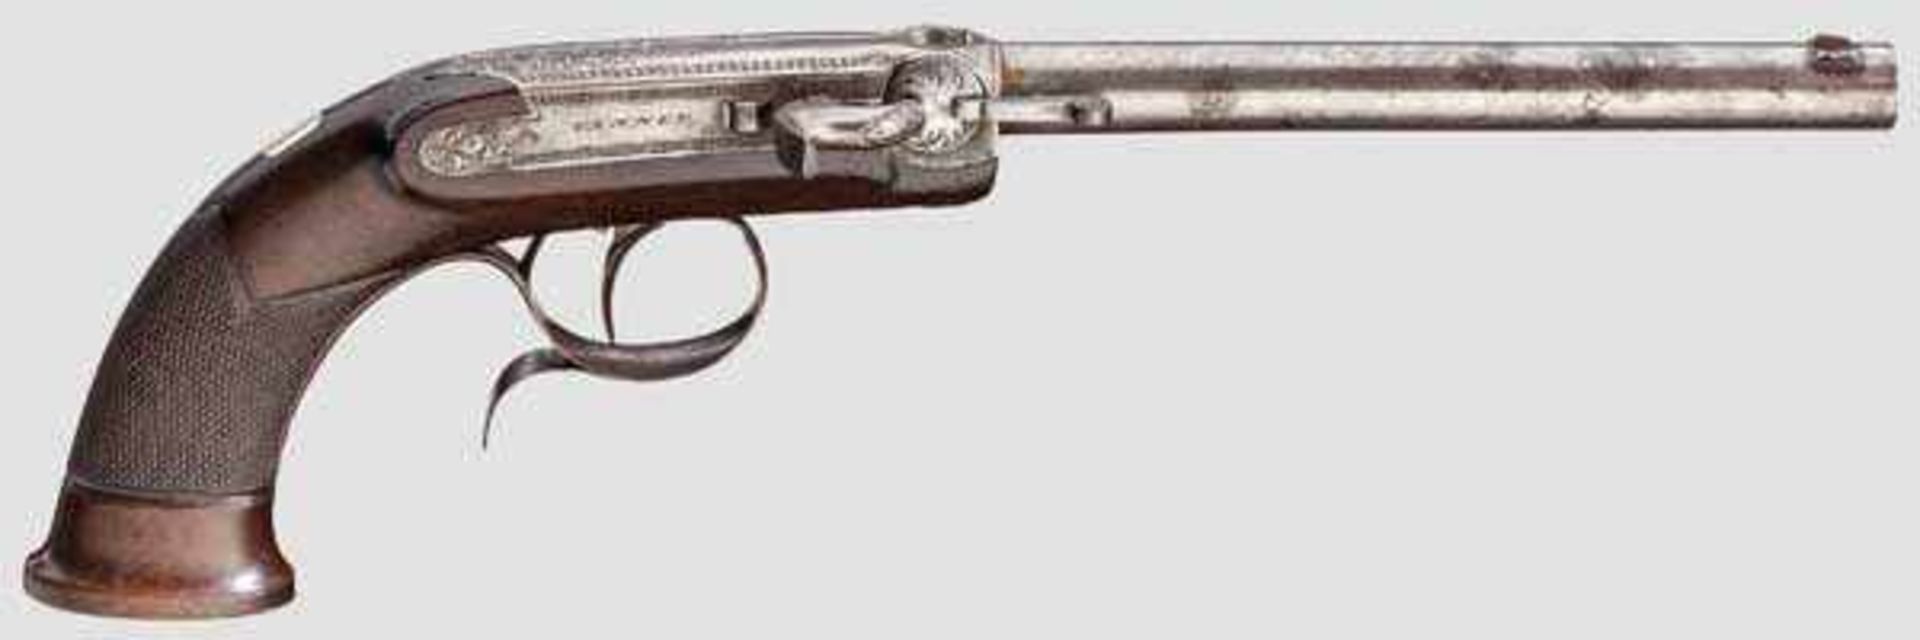 Hinterlader-Perkussionspistole, Tanner, Hannover um 1850/60 Runder und glatter Lauf im Kaliber 7